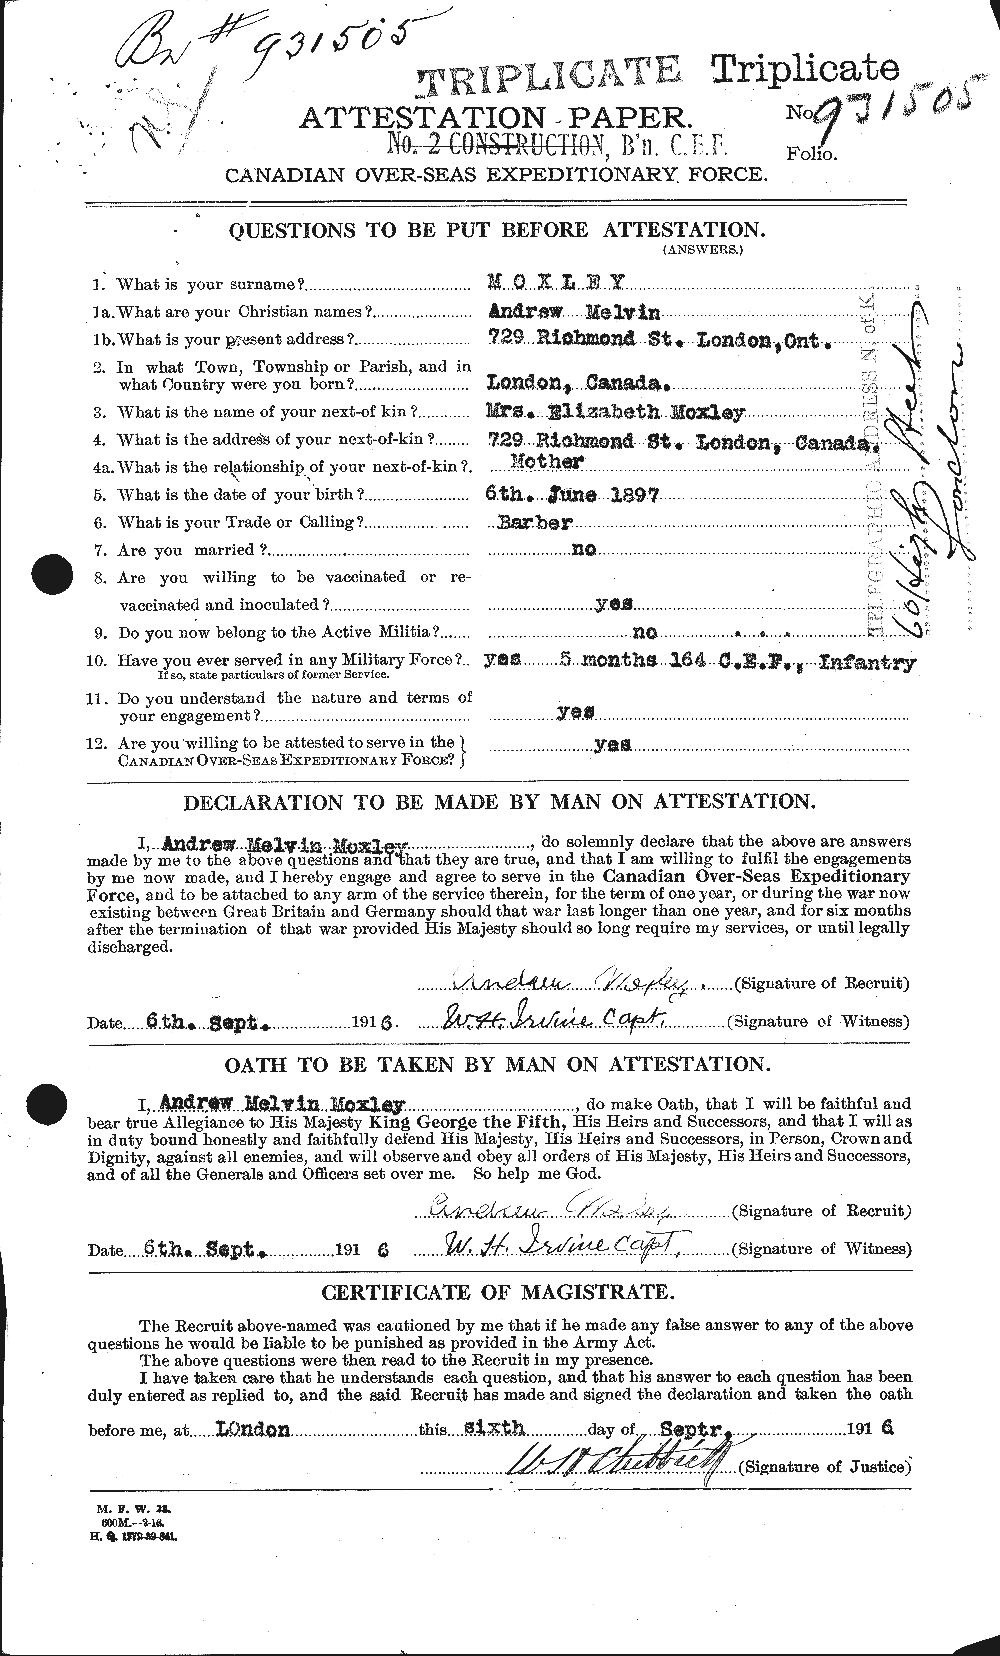 Dossiers du Personnel de la Première Guerre mondiale - CEC 510585a